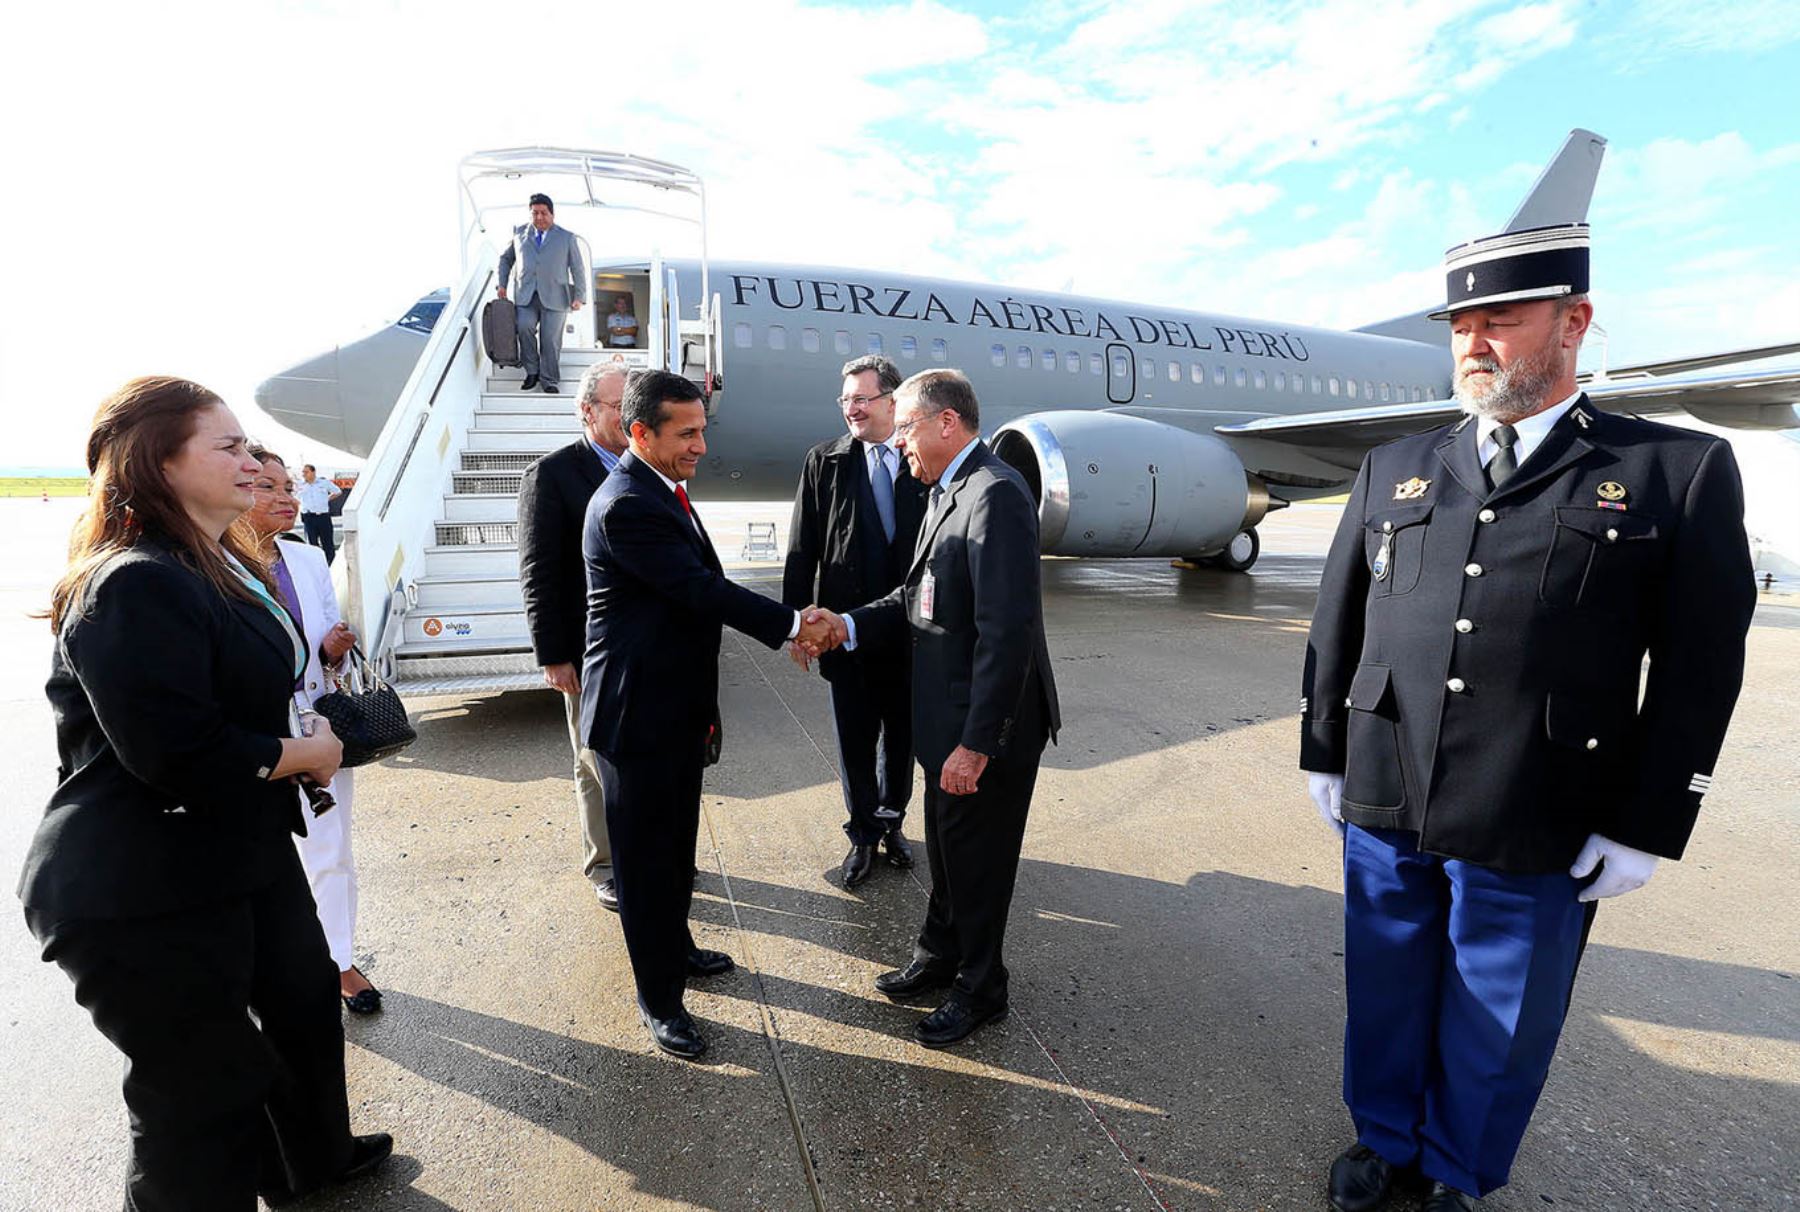 Presidente Ollanta Humala arriba a Francia para cumplir importante agenda de trabajo